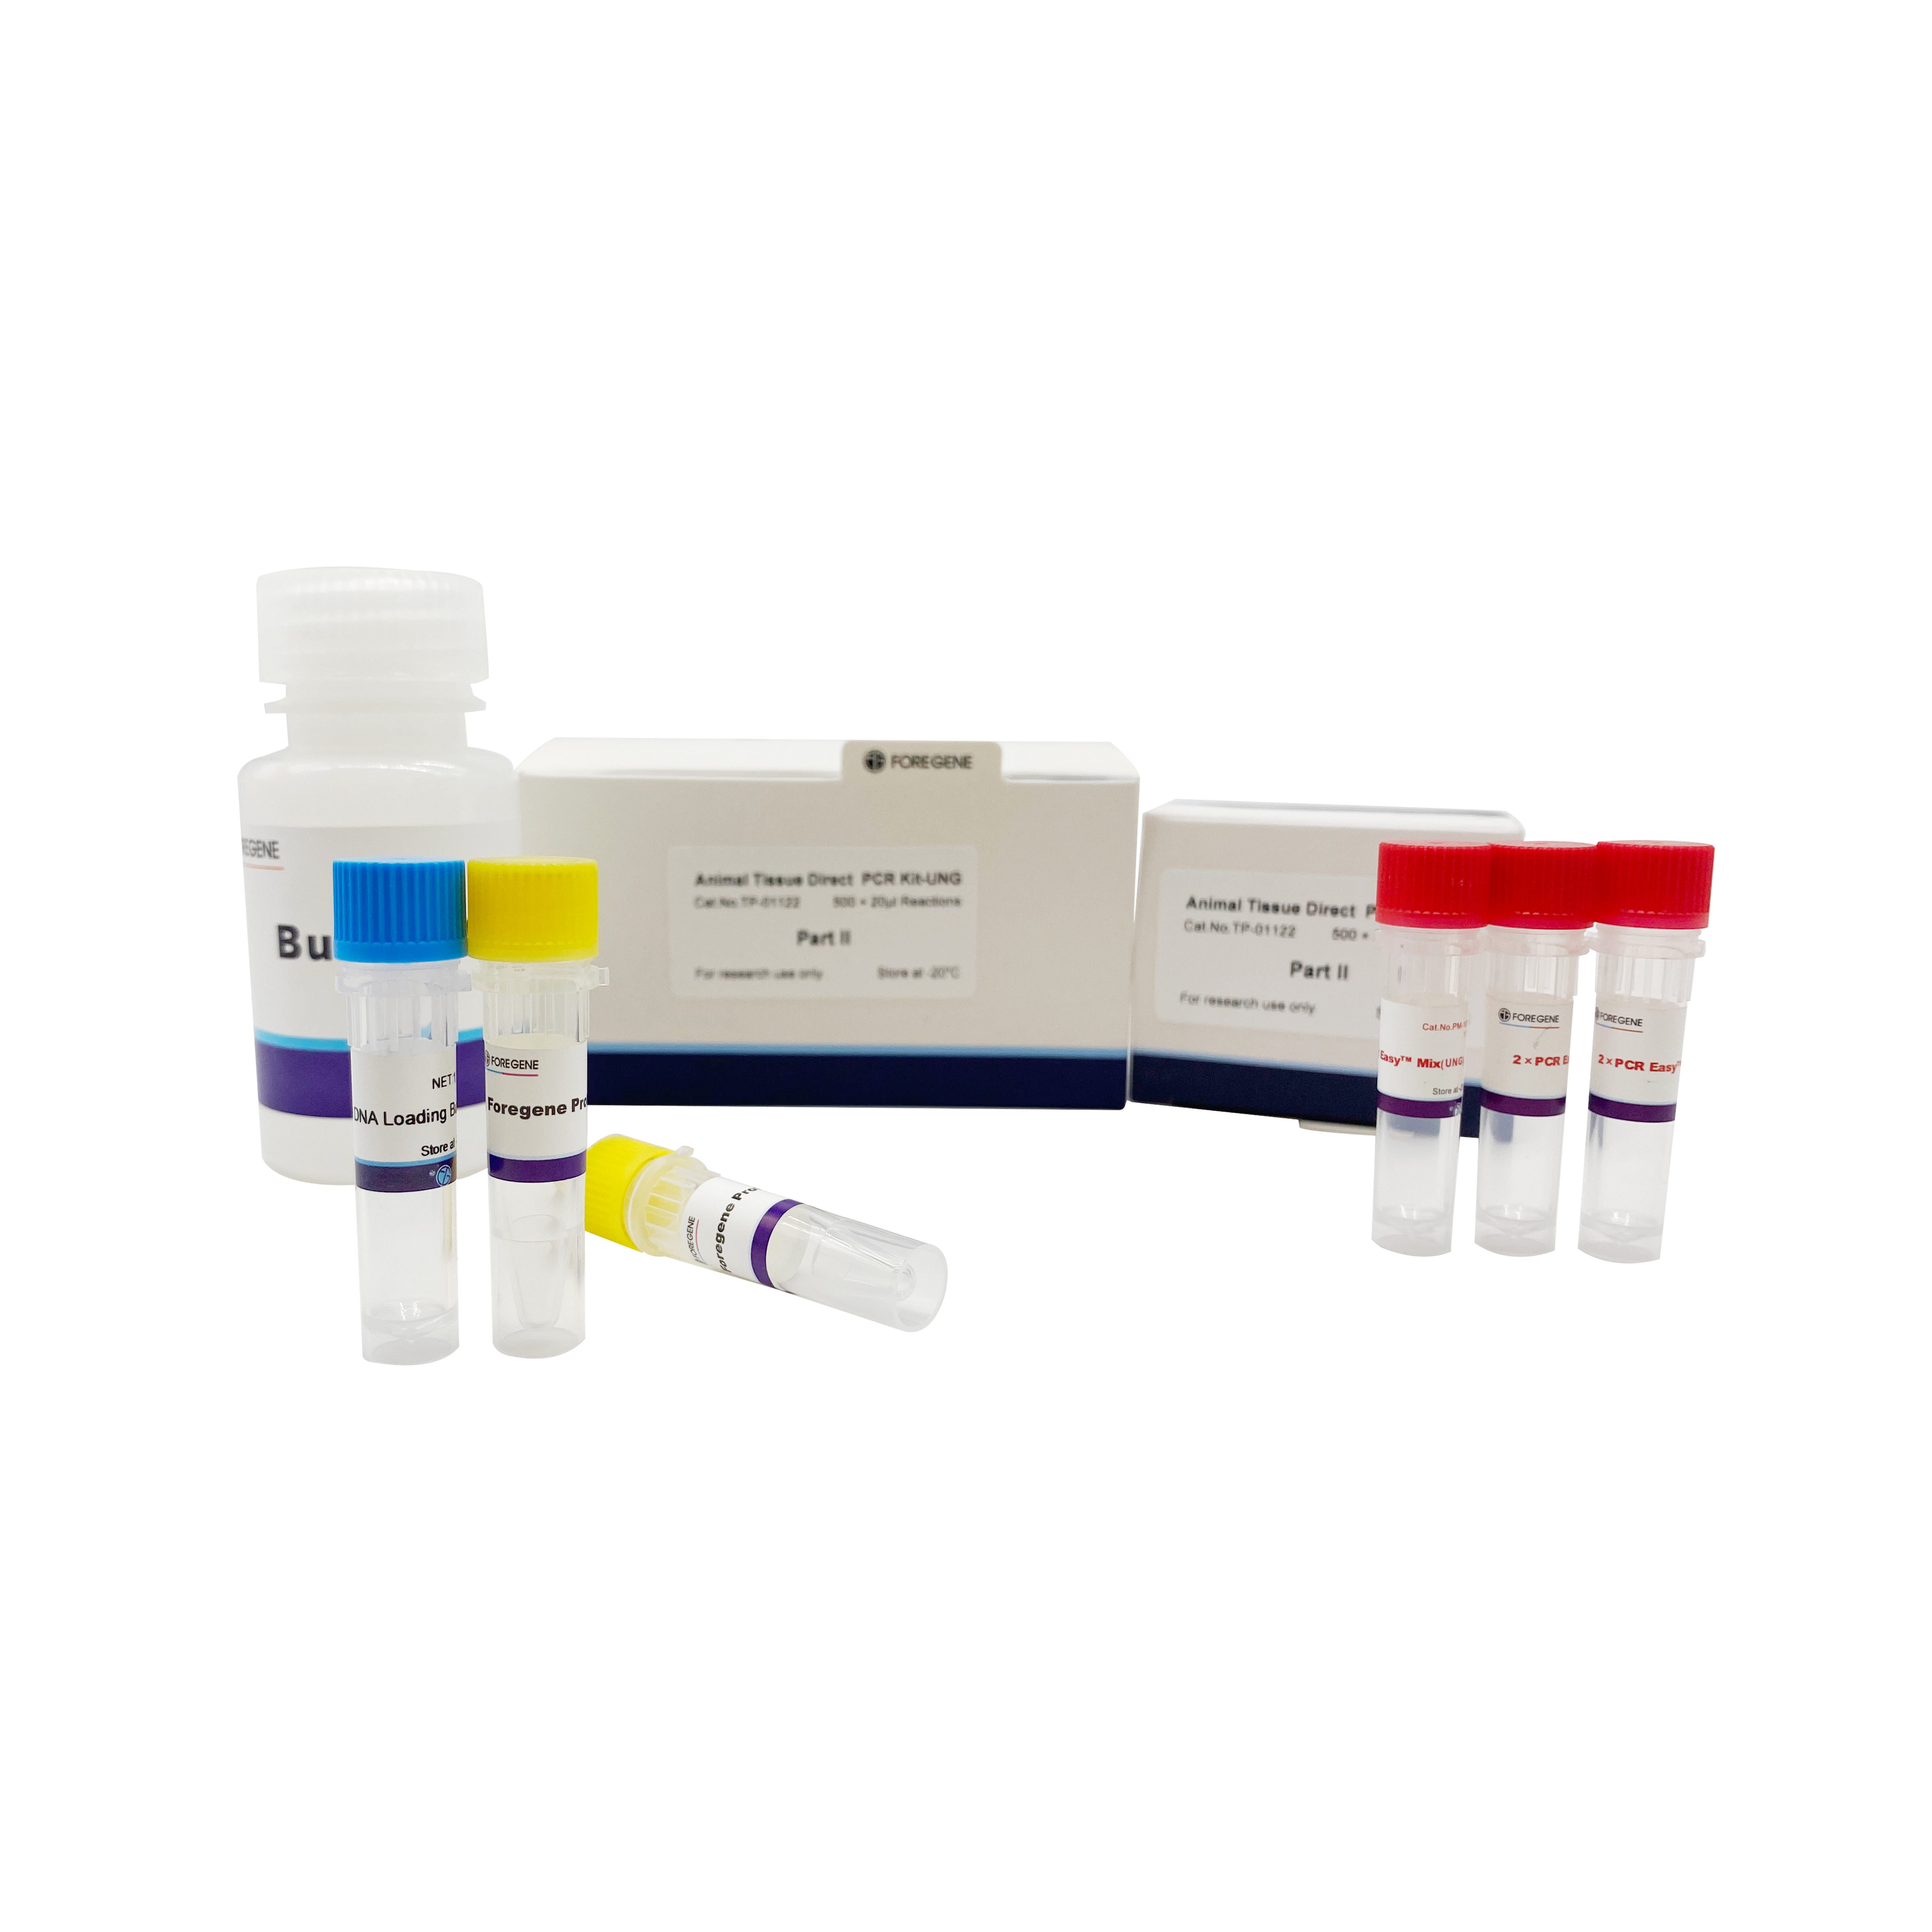 Animal Tissue Direct PCR Kit-UNG (bez ekstrakcije DNK)